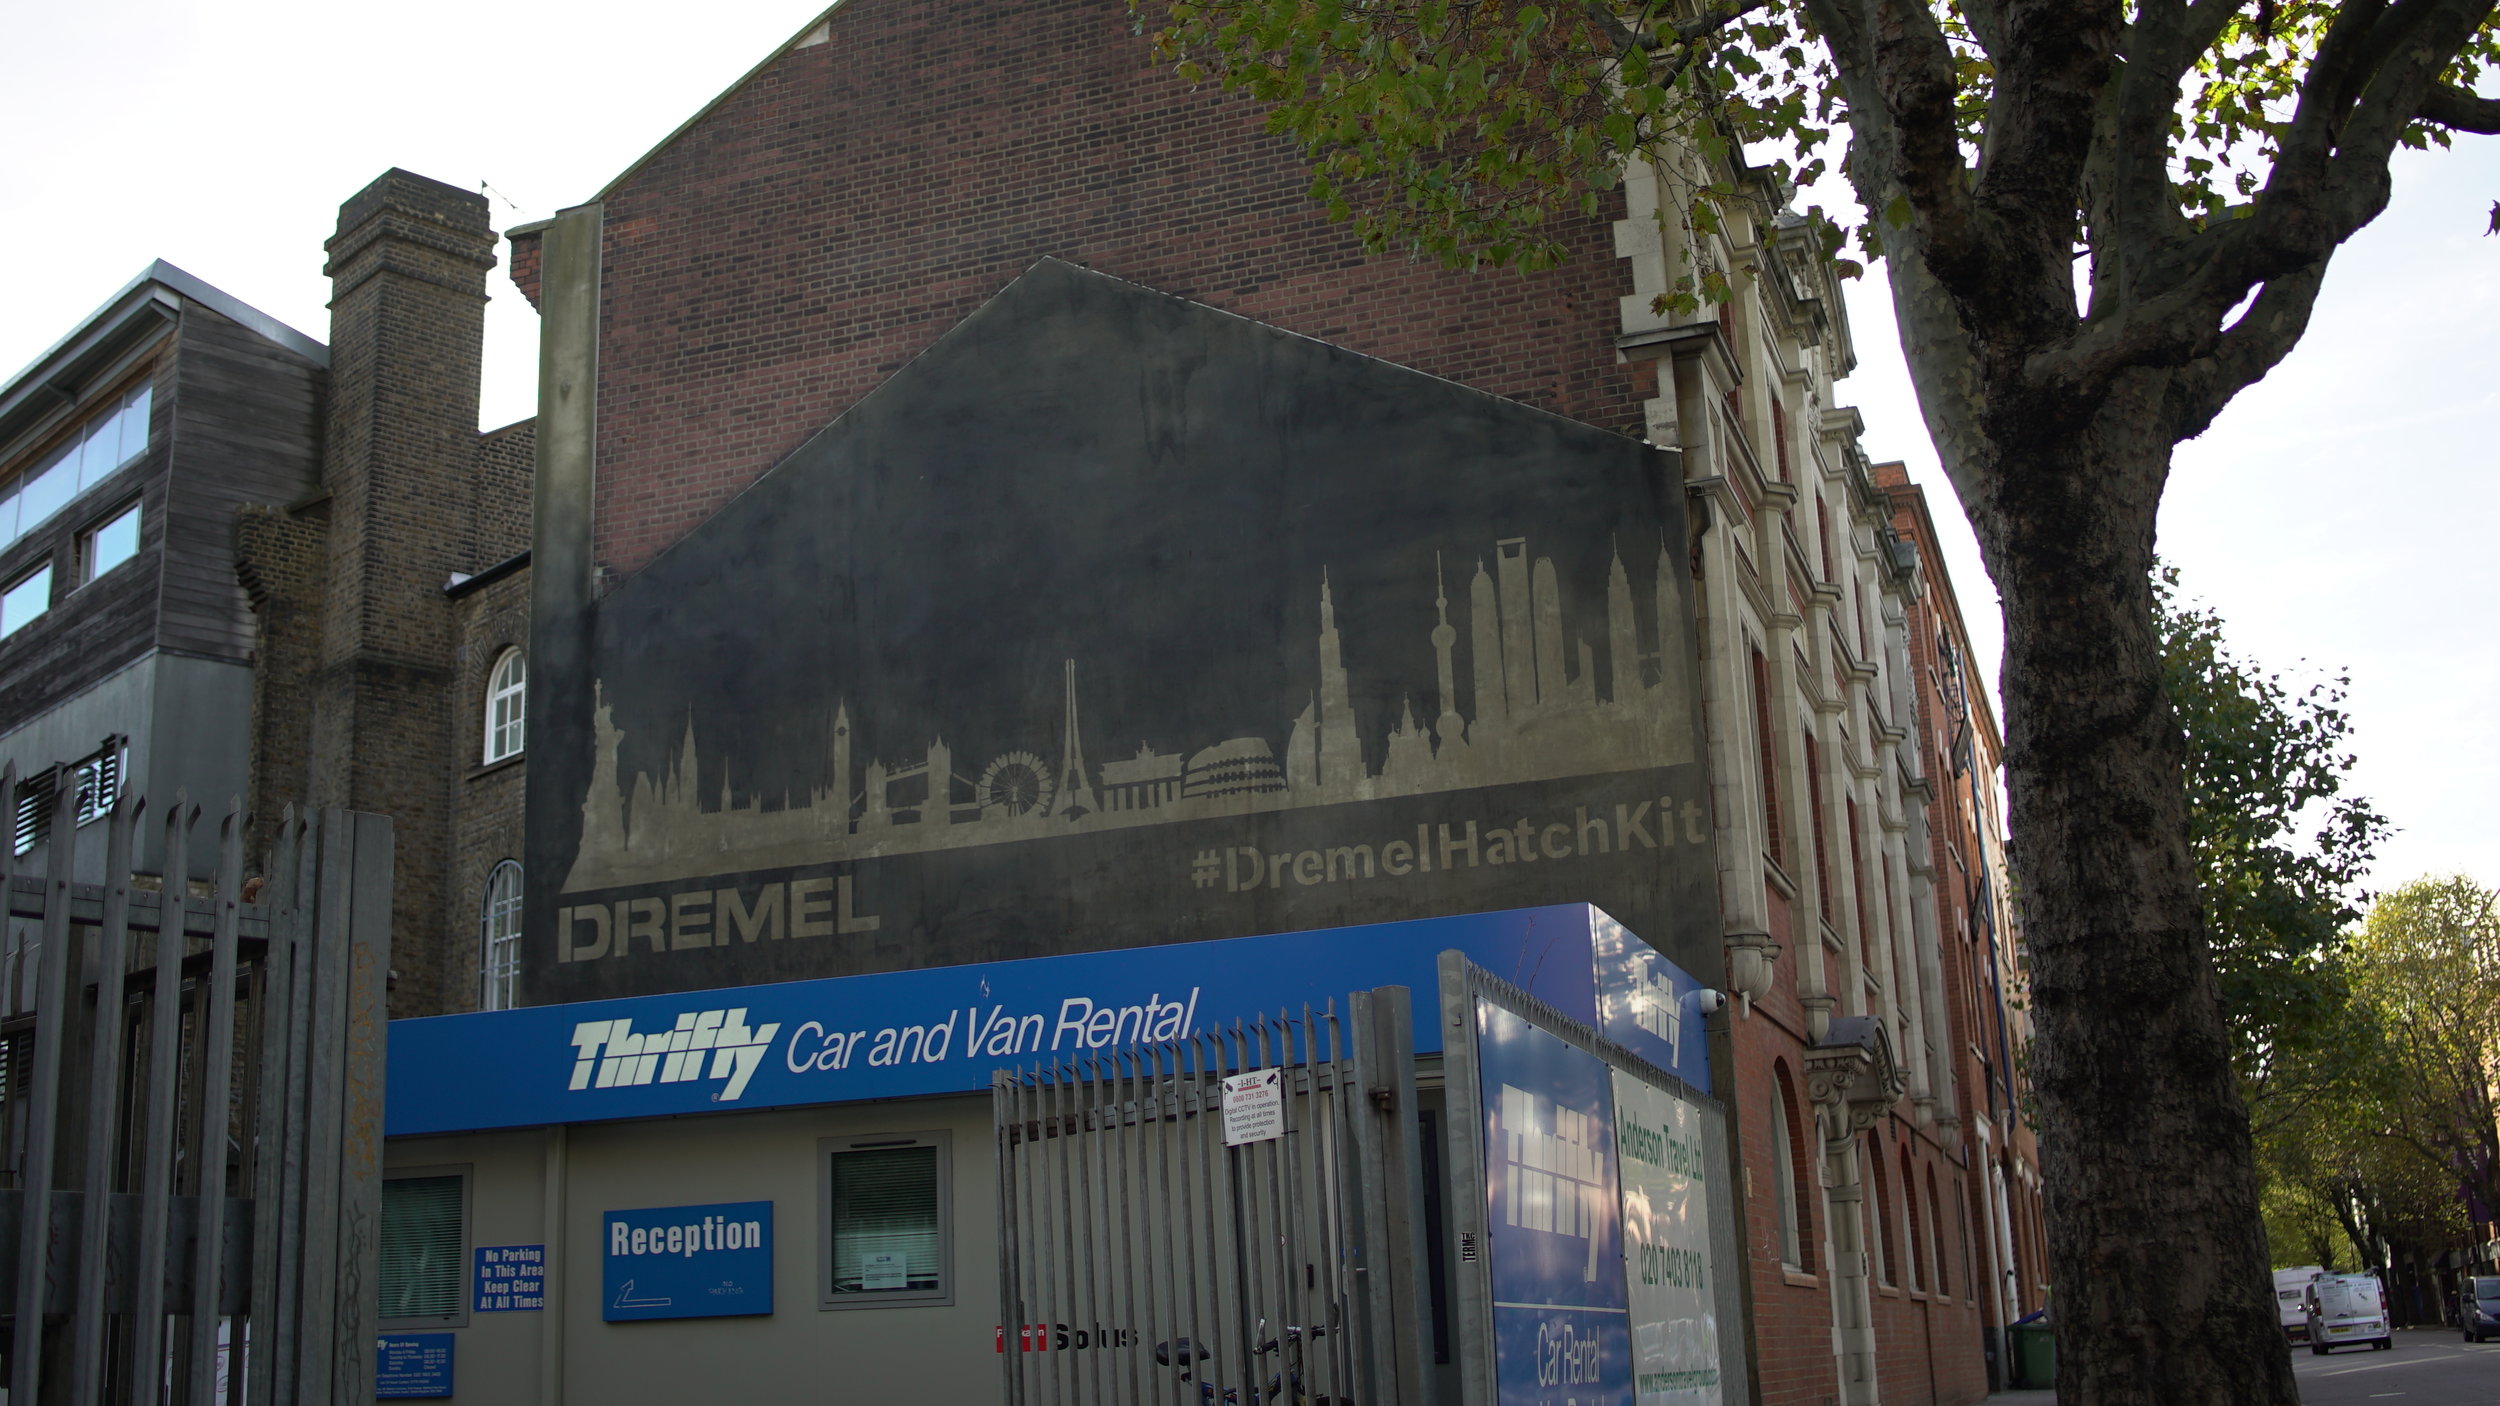 Dremel Reverse Graffiti Mural Media